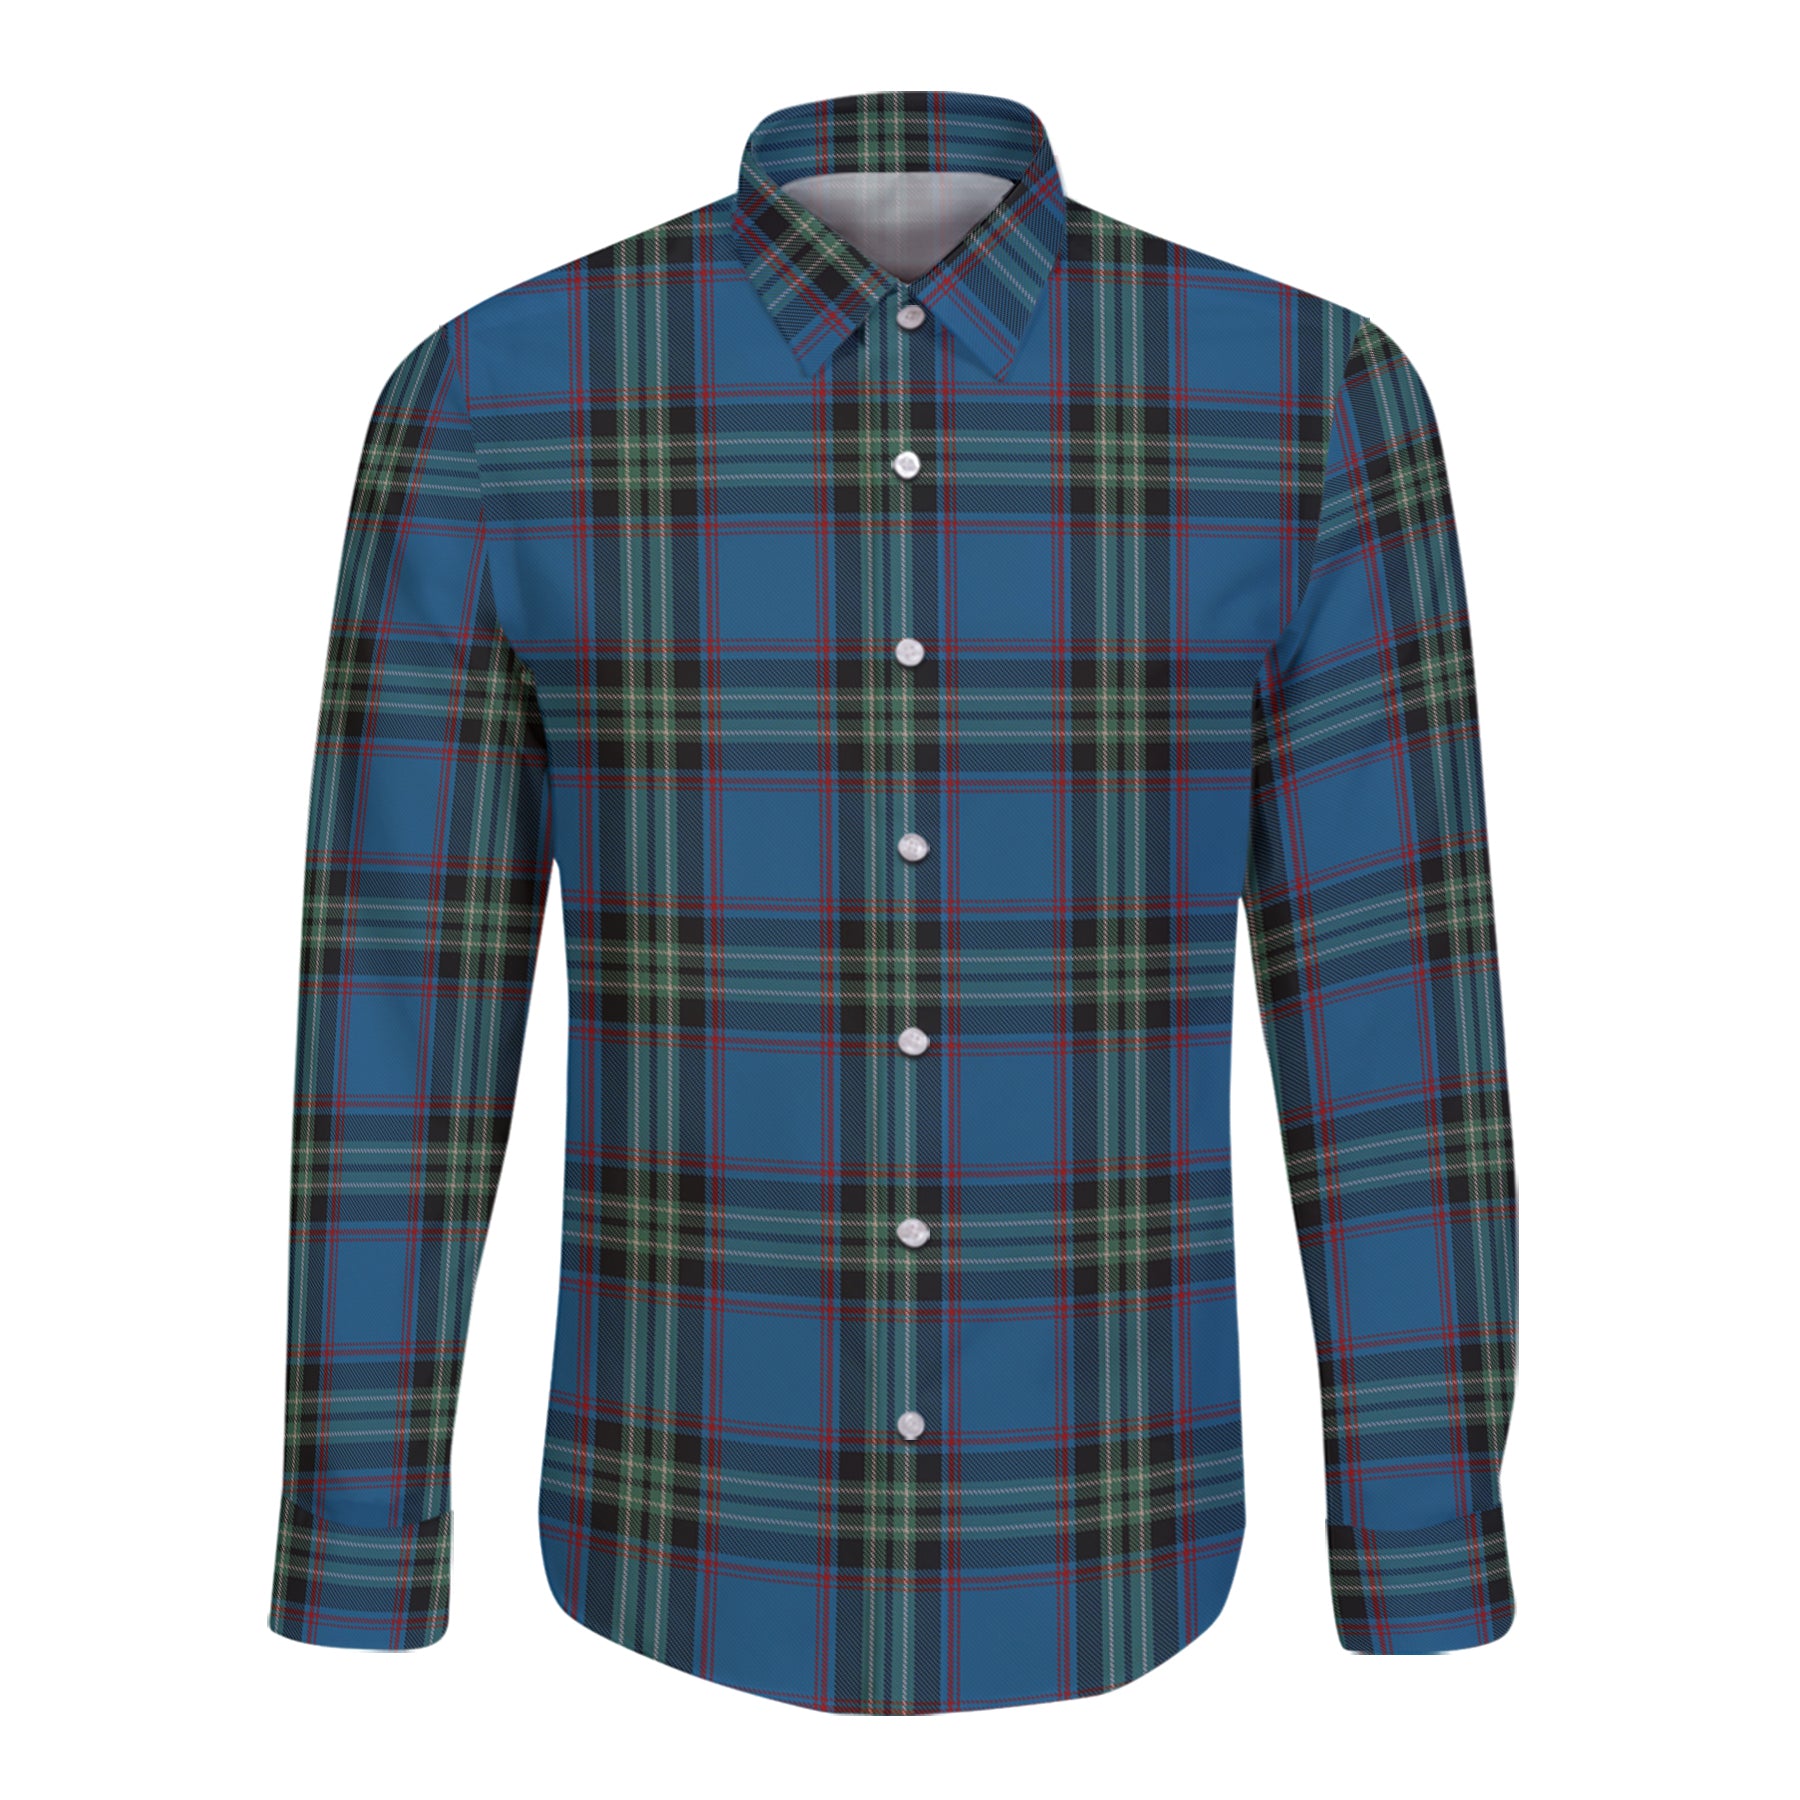 Parr Tartan Long Sleeve Button Up Shirt K23